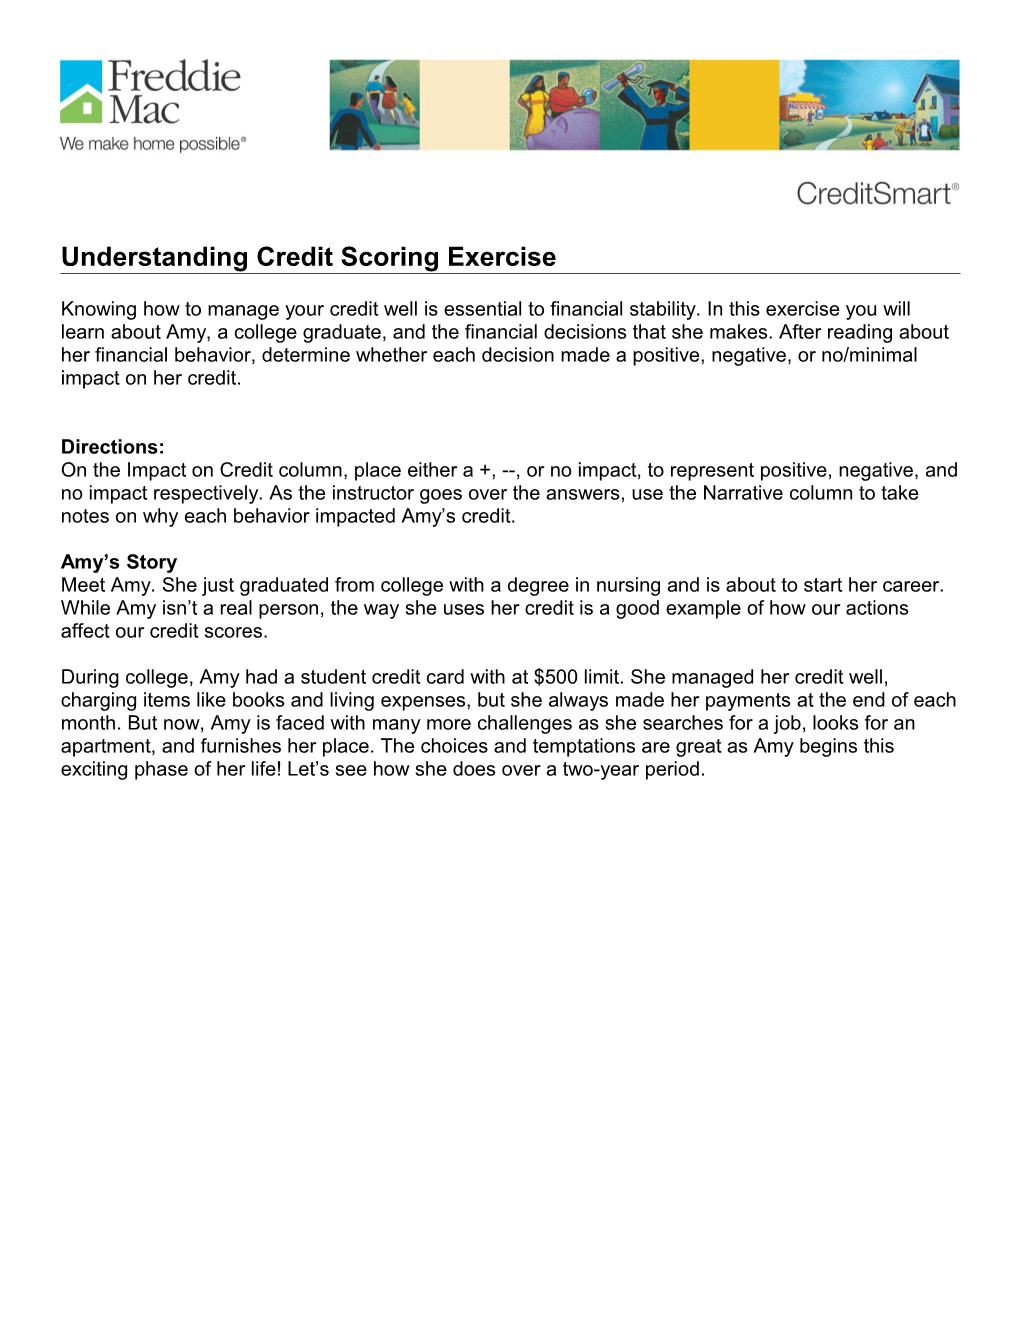 Module 6: Understanding Credit Scoring Exercise